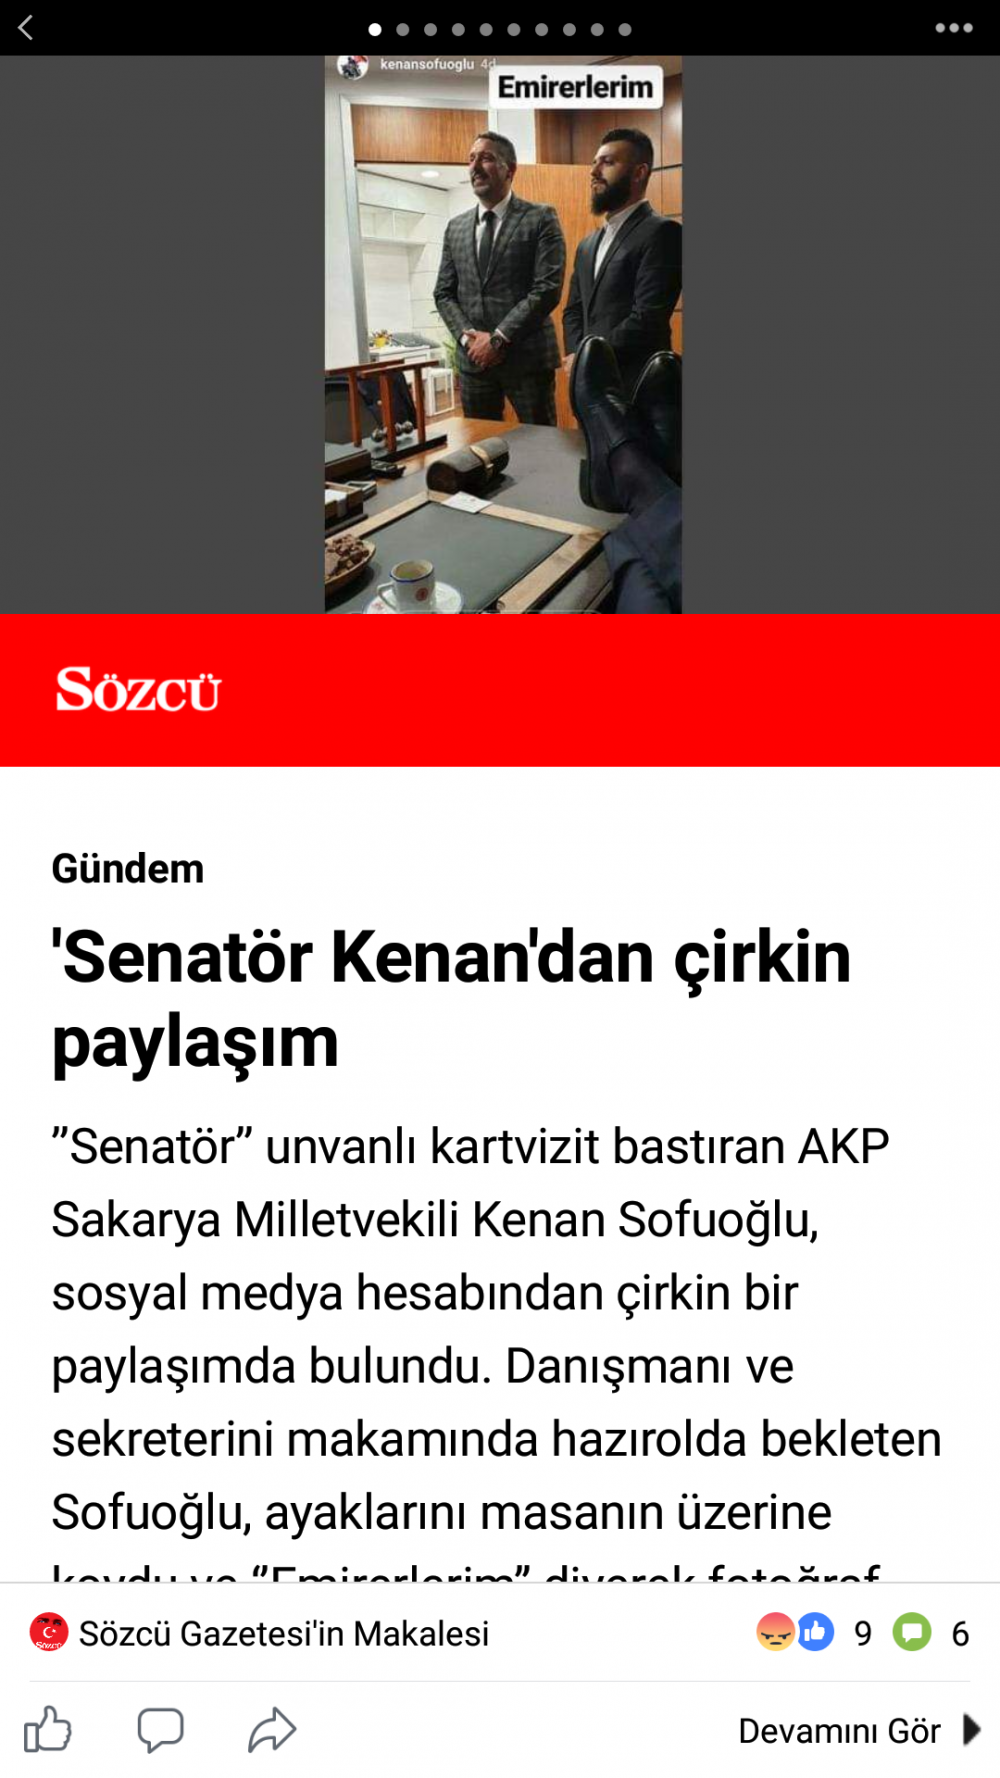 Kenan Sofuoğlu'nun Meclis'te ki makamında,masaya ayaklarını uzatıp danışmanlarını "emirerlerim" açıklamasıyla fotoğrafını yayınladı.